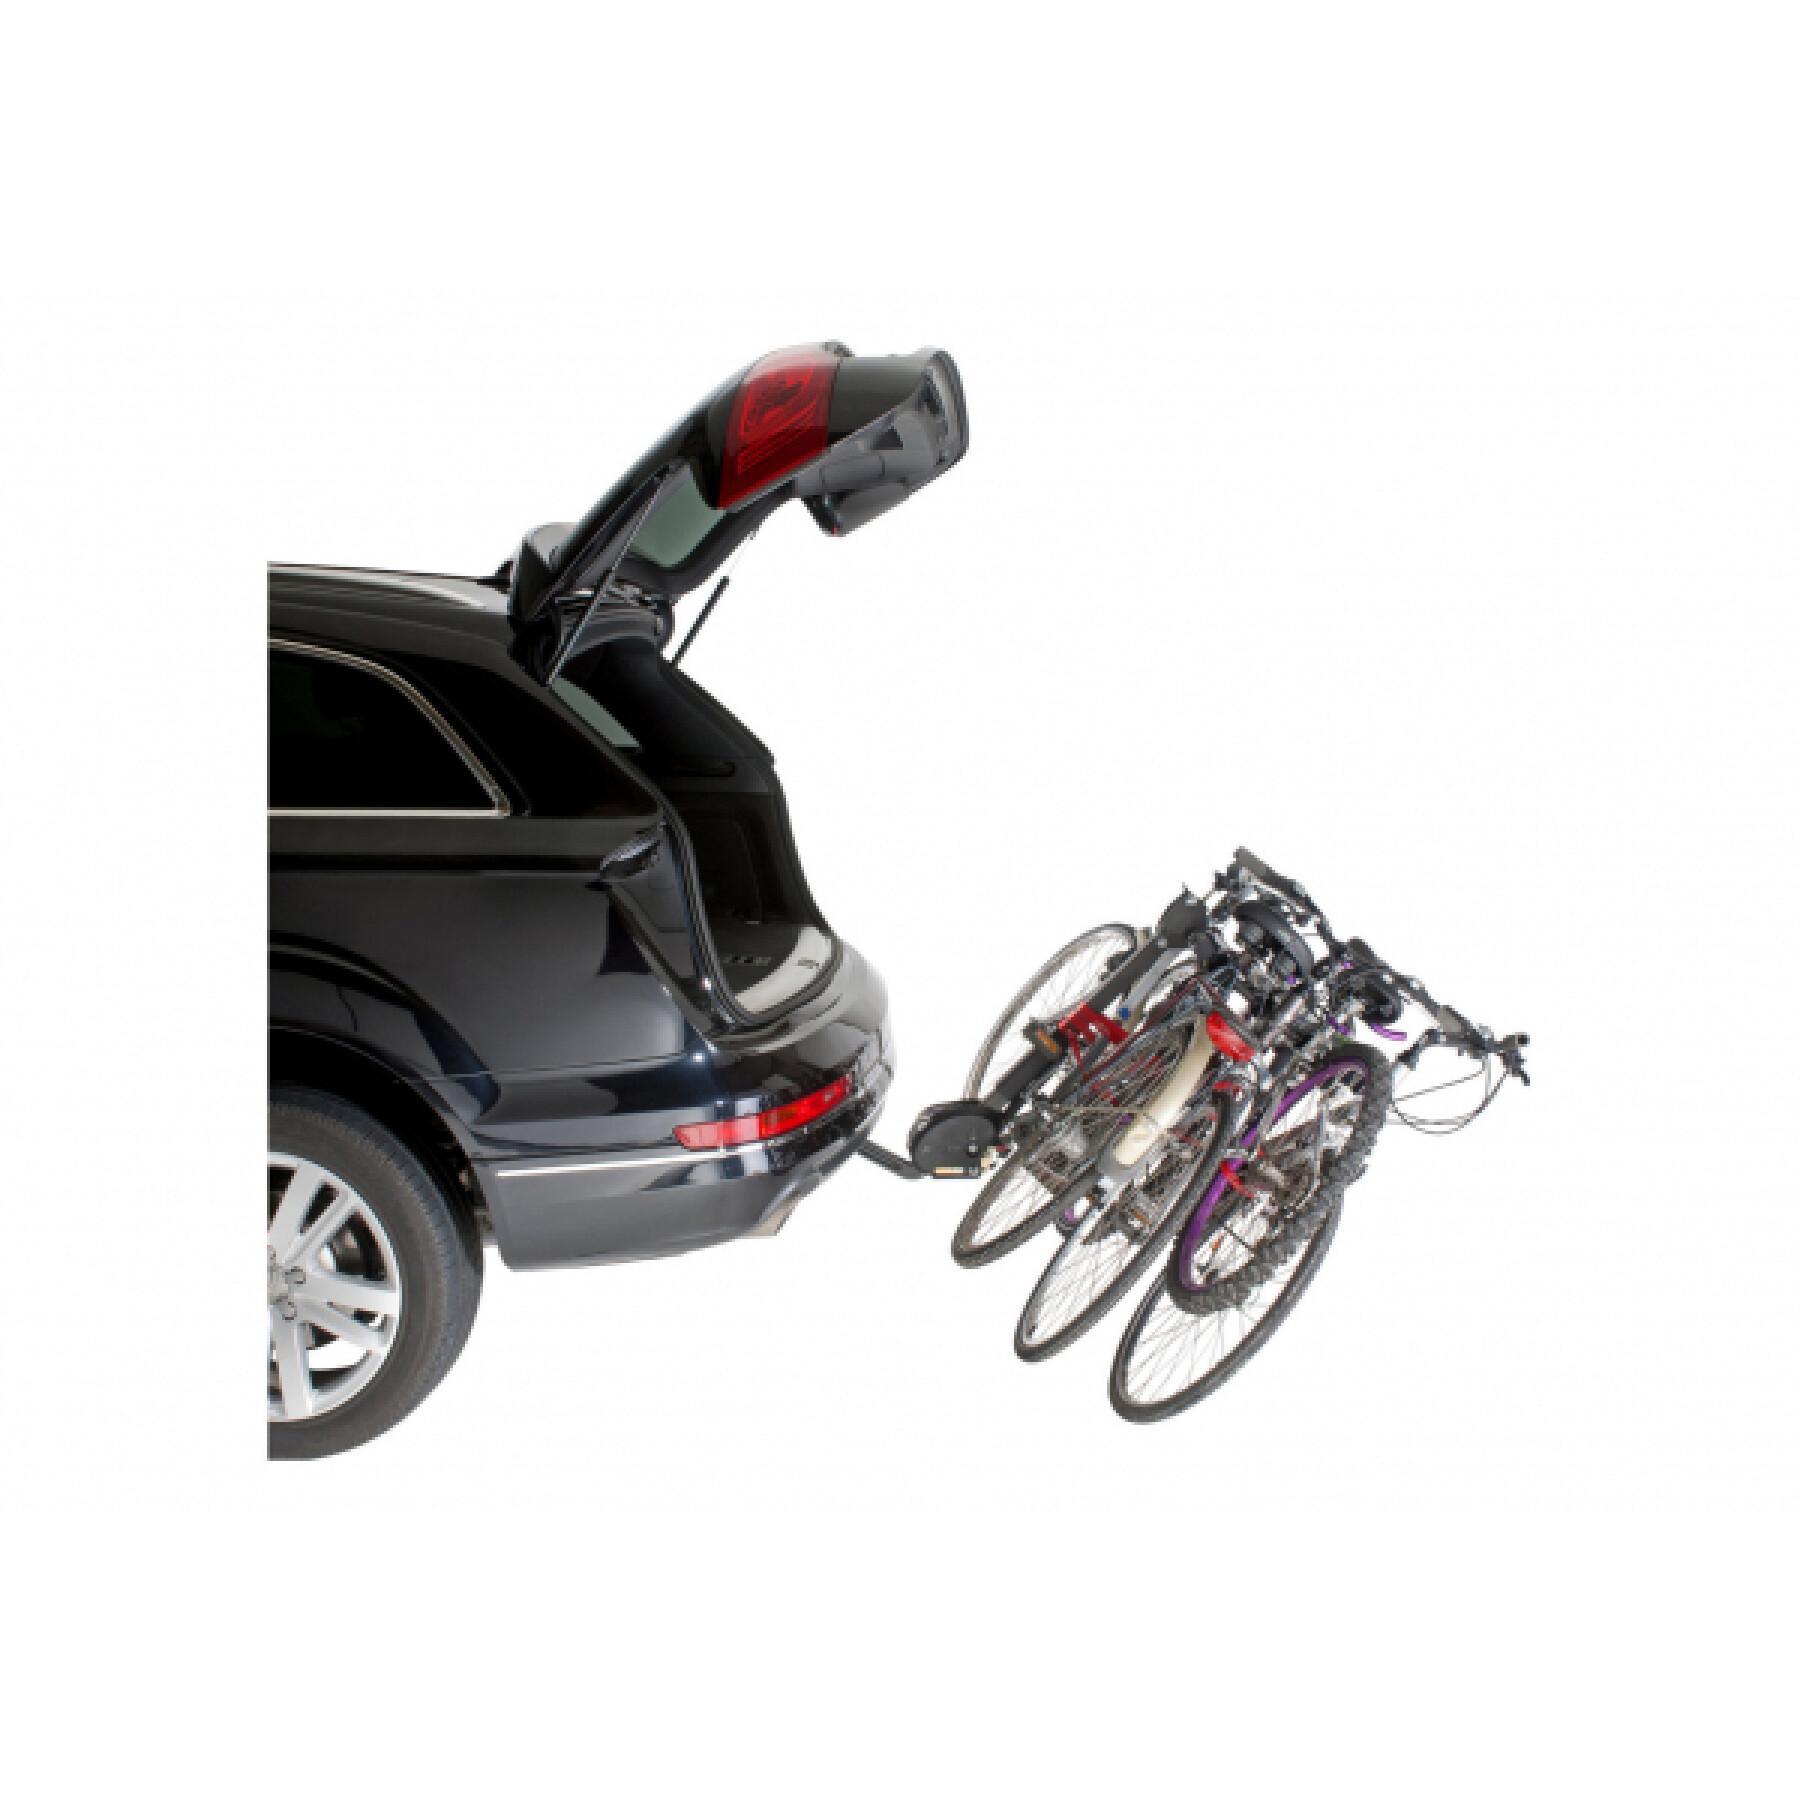 Porta bicicletas suspenso para 4 bicicletas, inclinável com dispositivo anti-roubo, fácil de montar rapide - fabricado em França Mottez Hercule homologue ce - 60 kgs